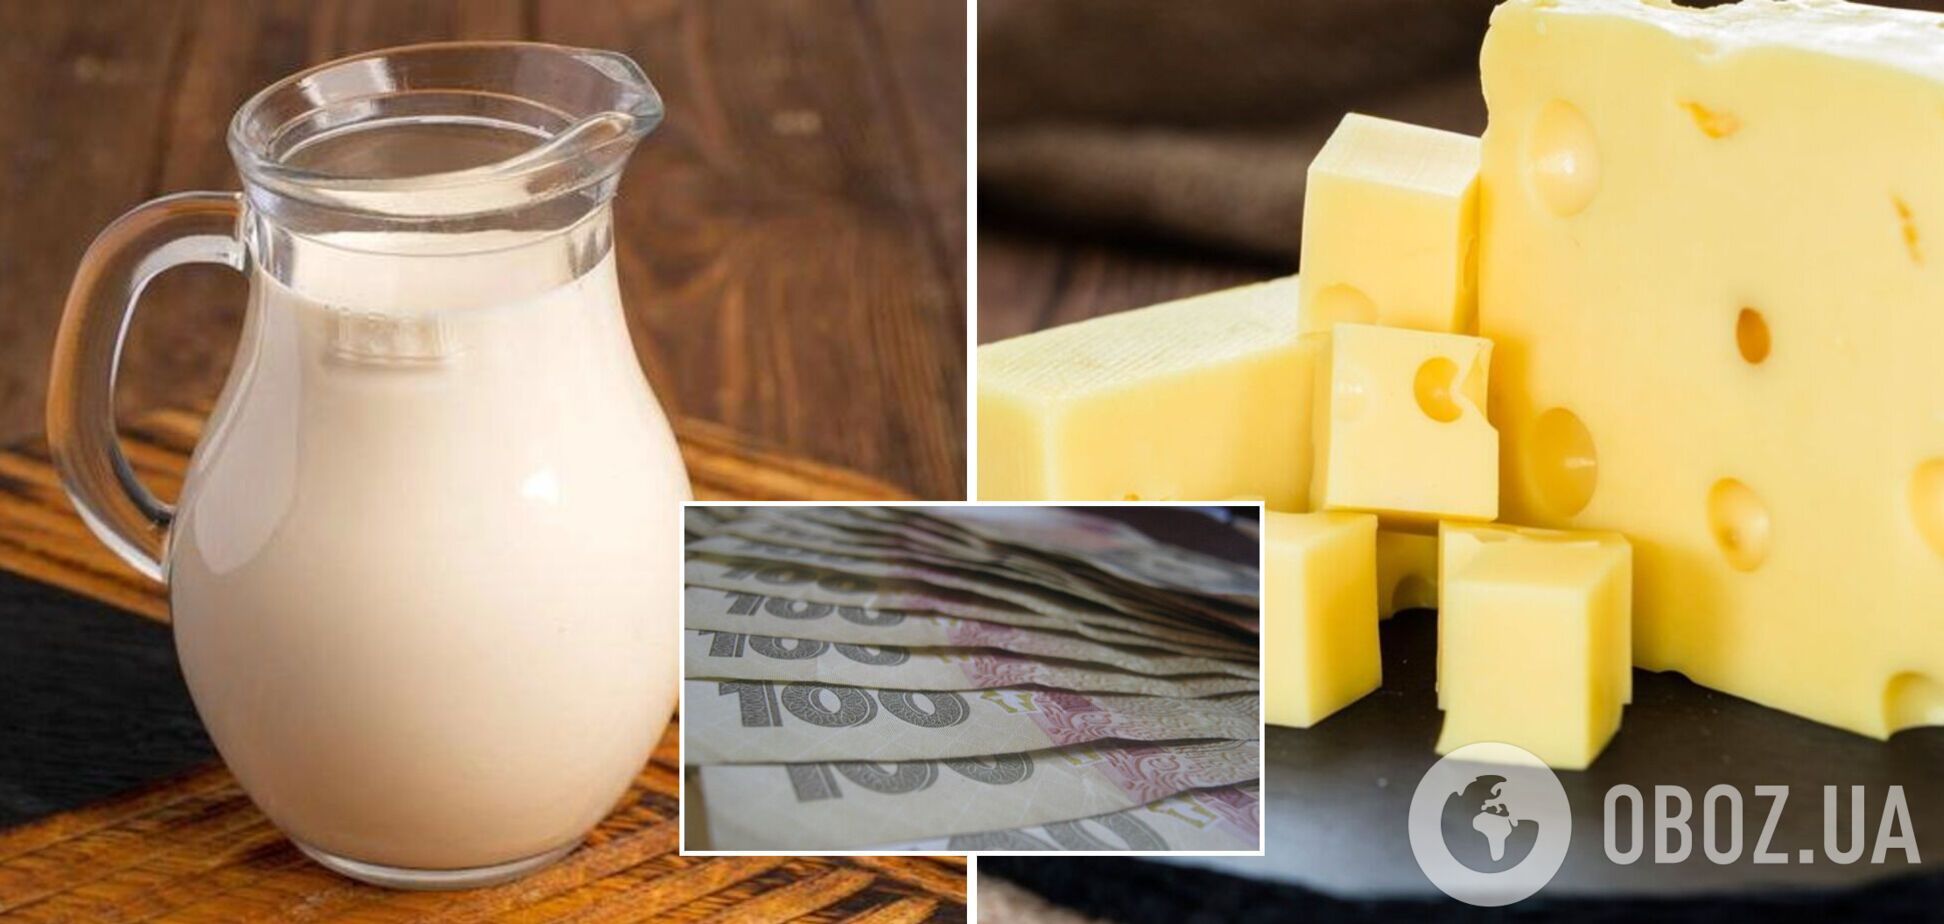 Цены на молочные продукты в Украине вырастут